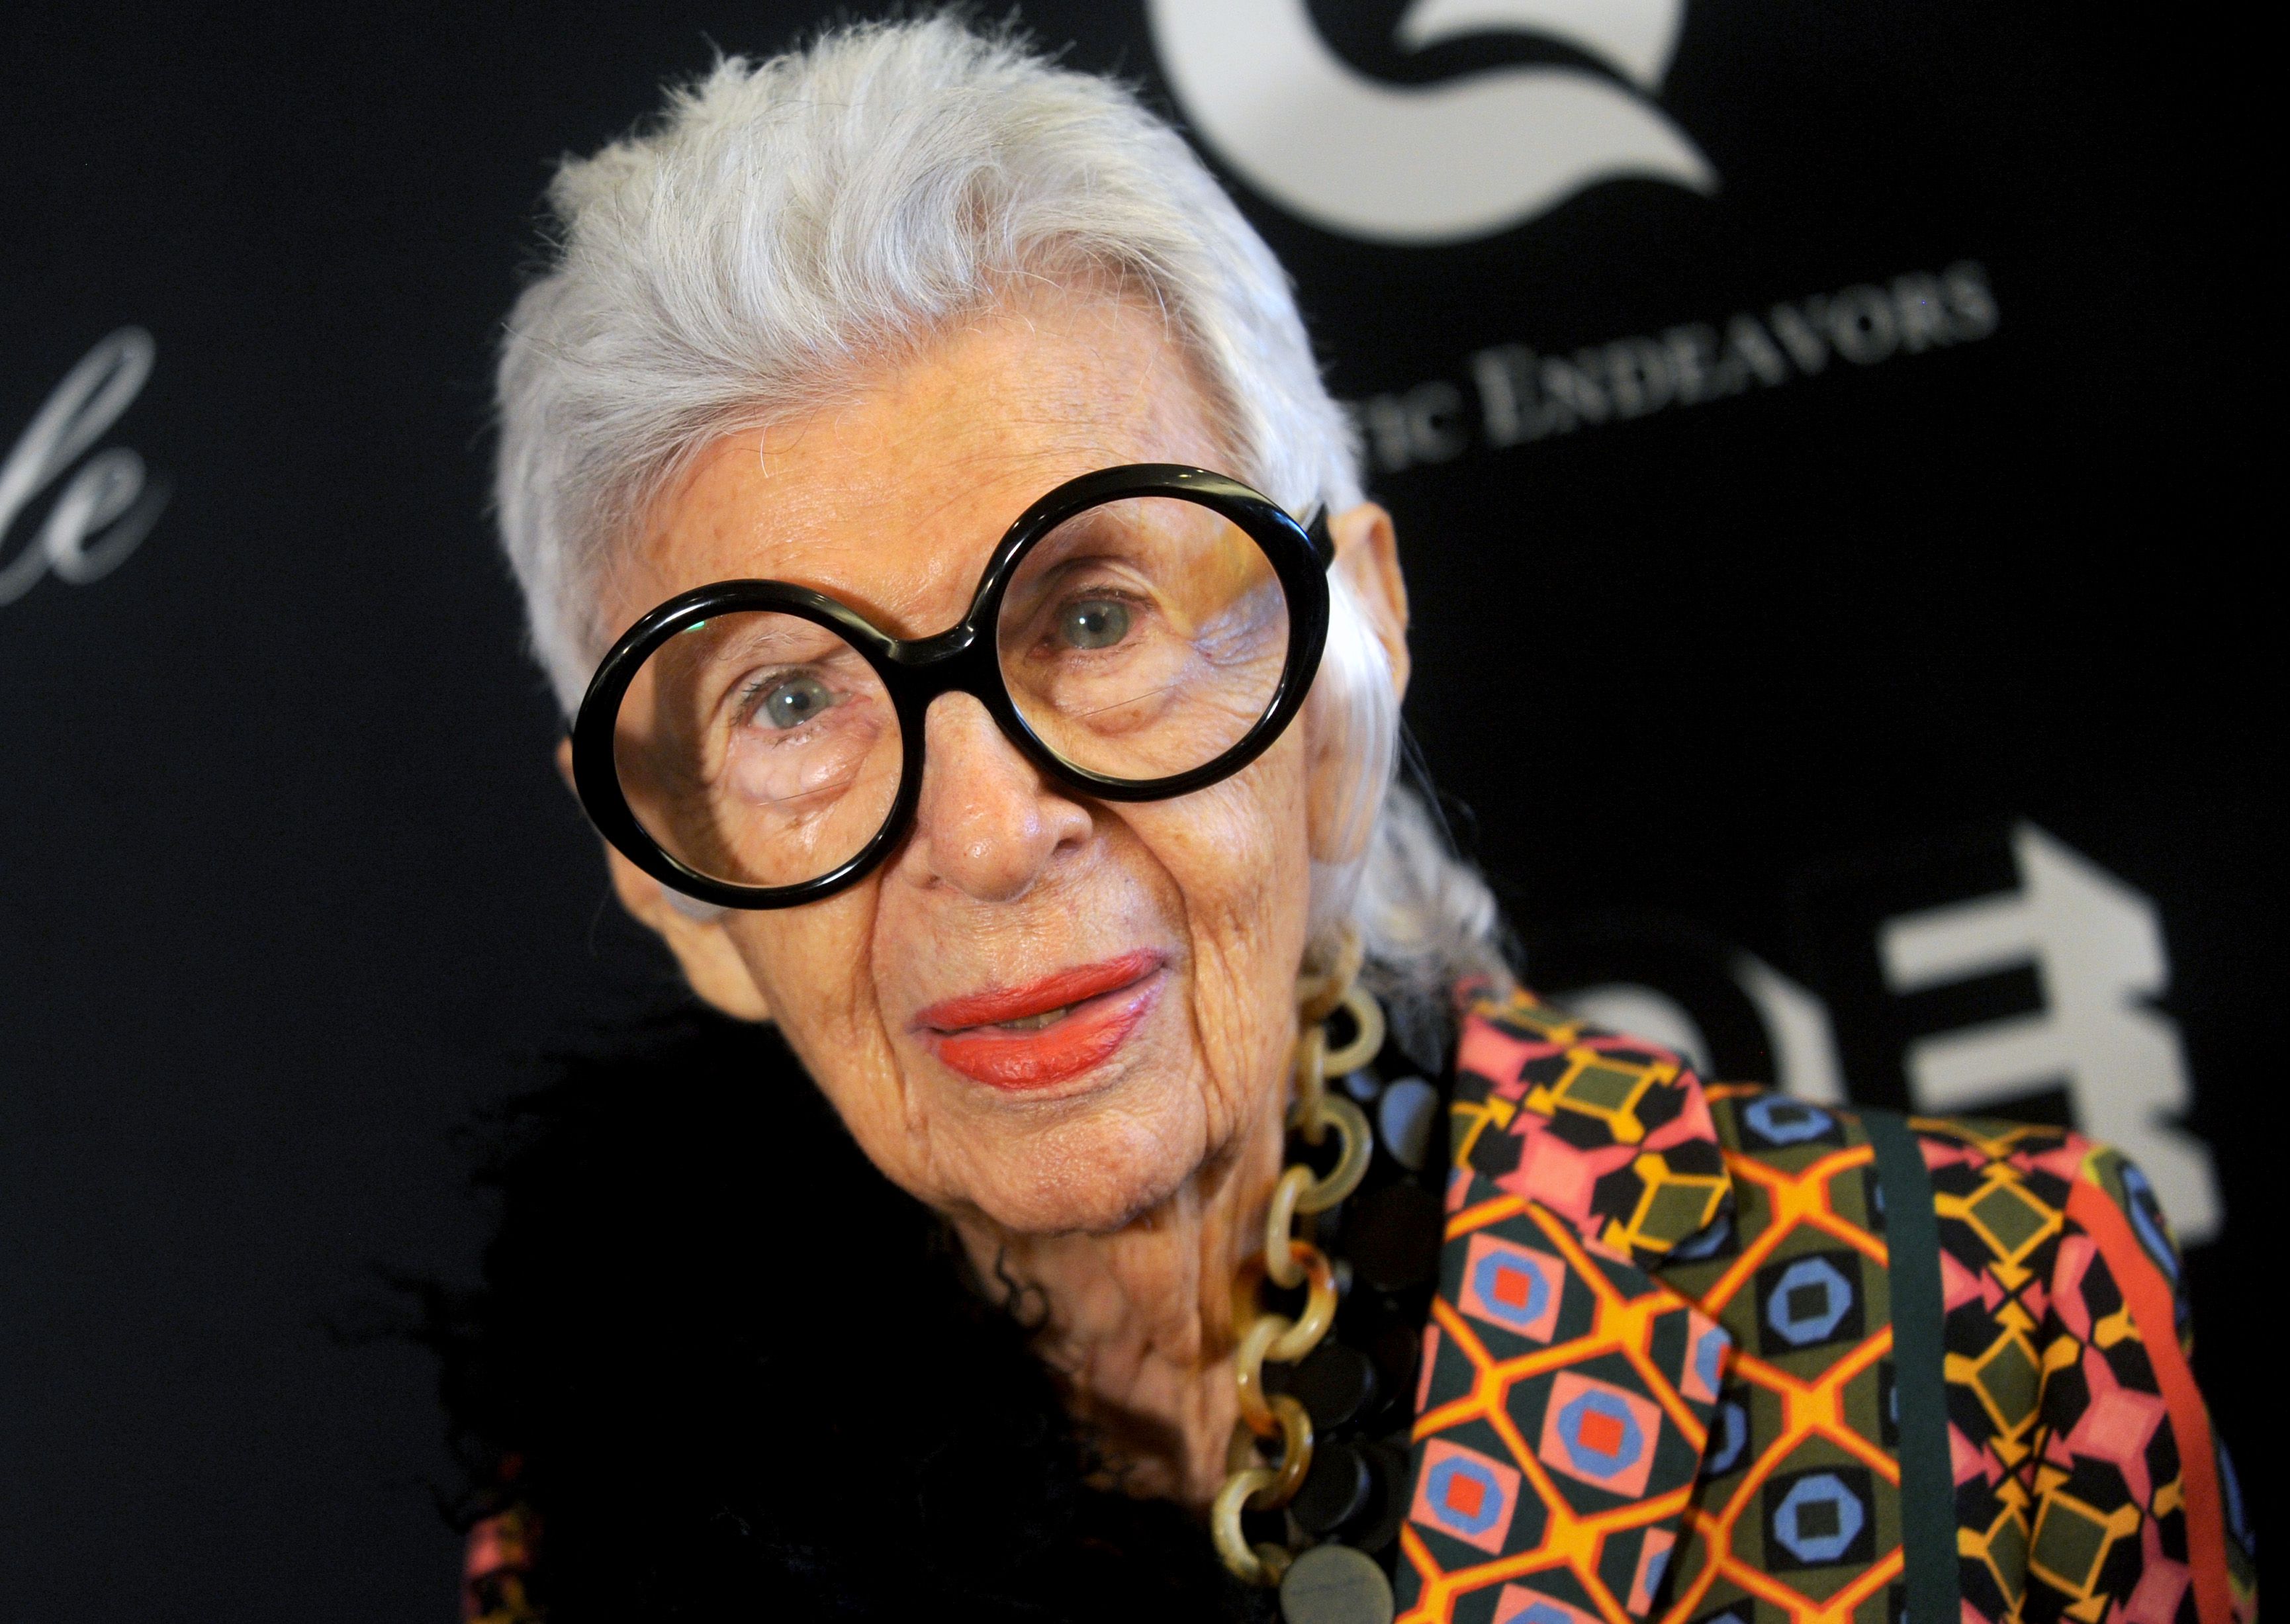 Preminula poznata modna ikona Iris Apfel (102): Smatrala je da ni uz hrpu novca stil nije moguće kupiti